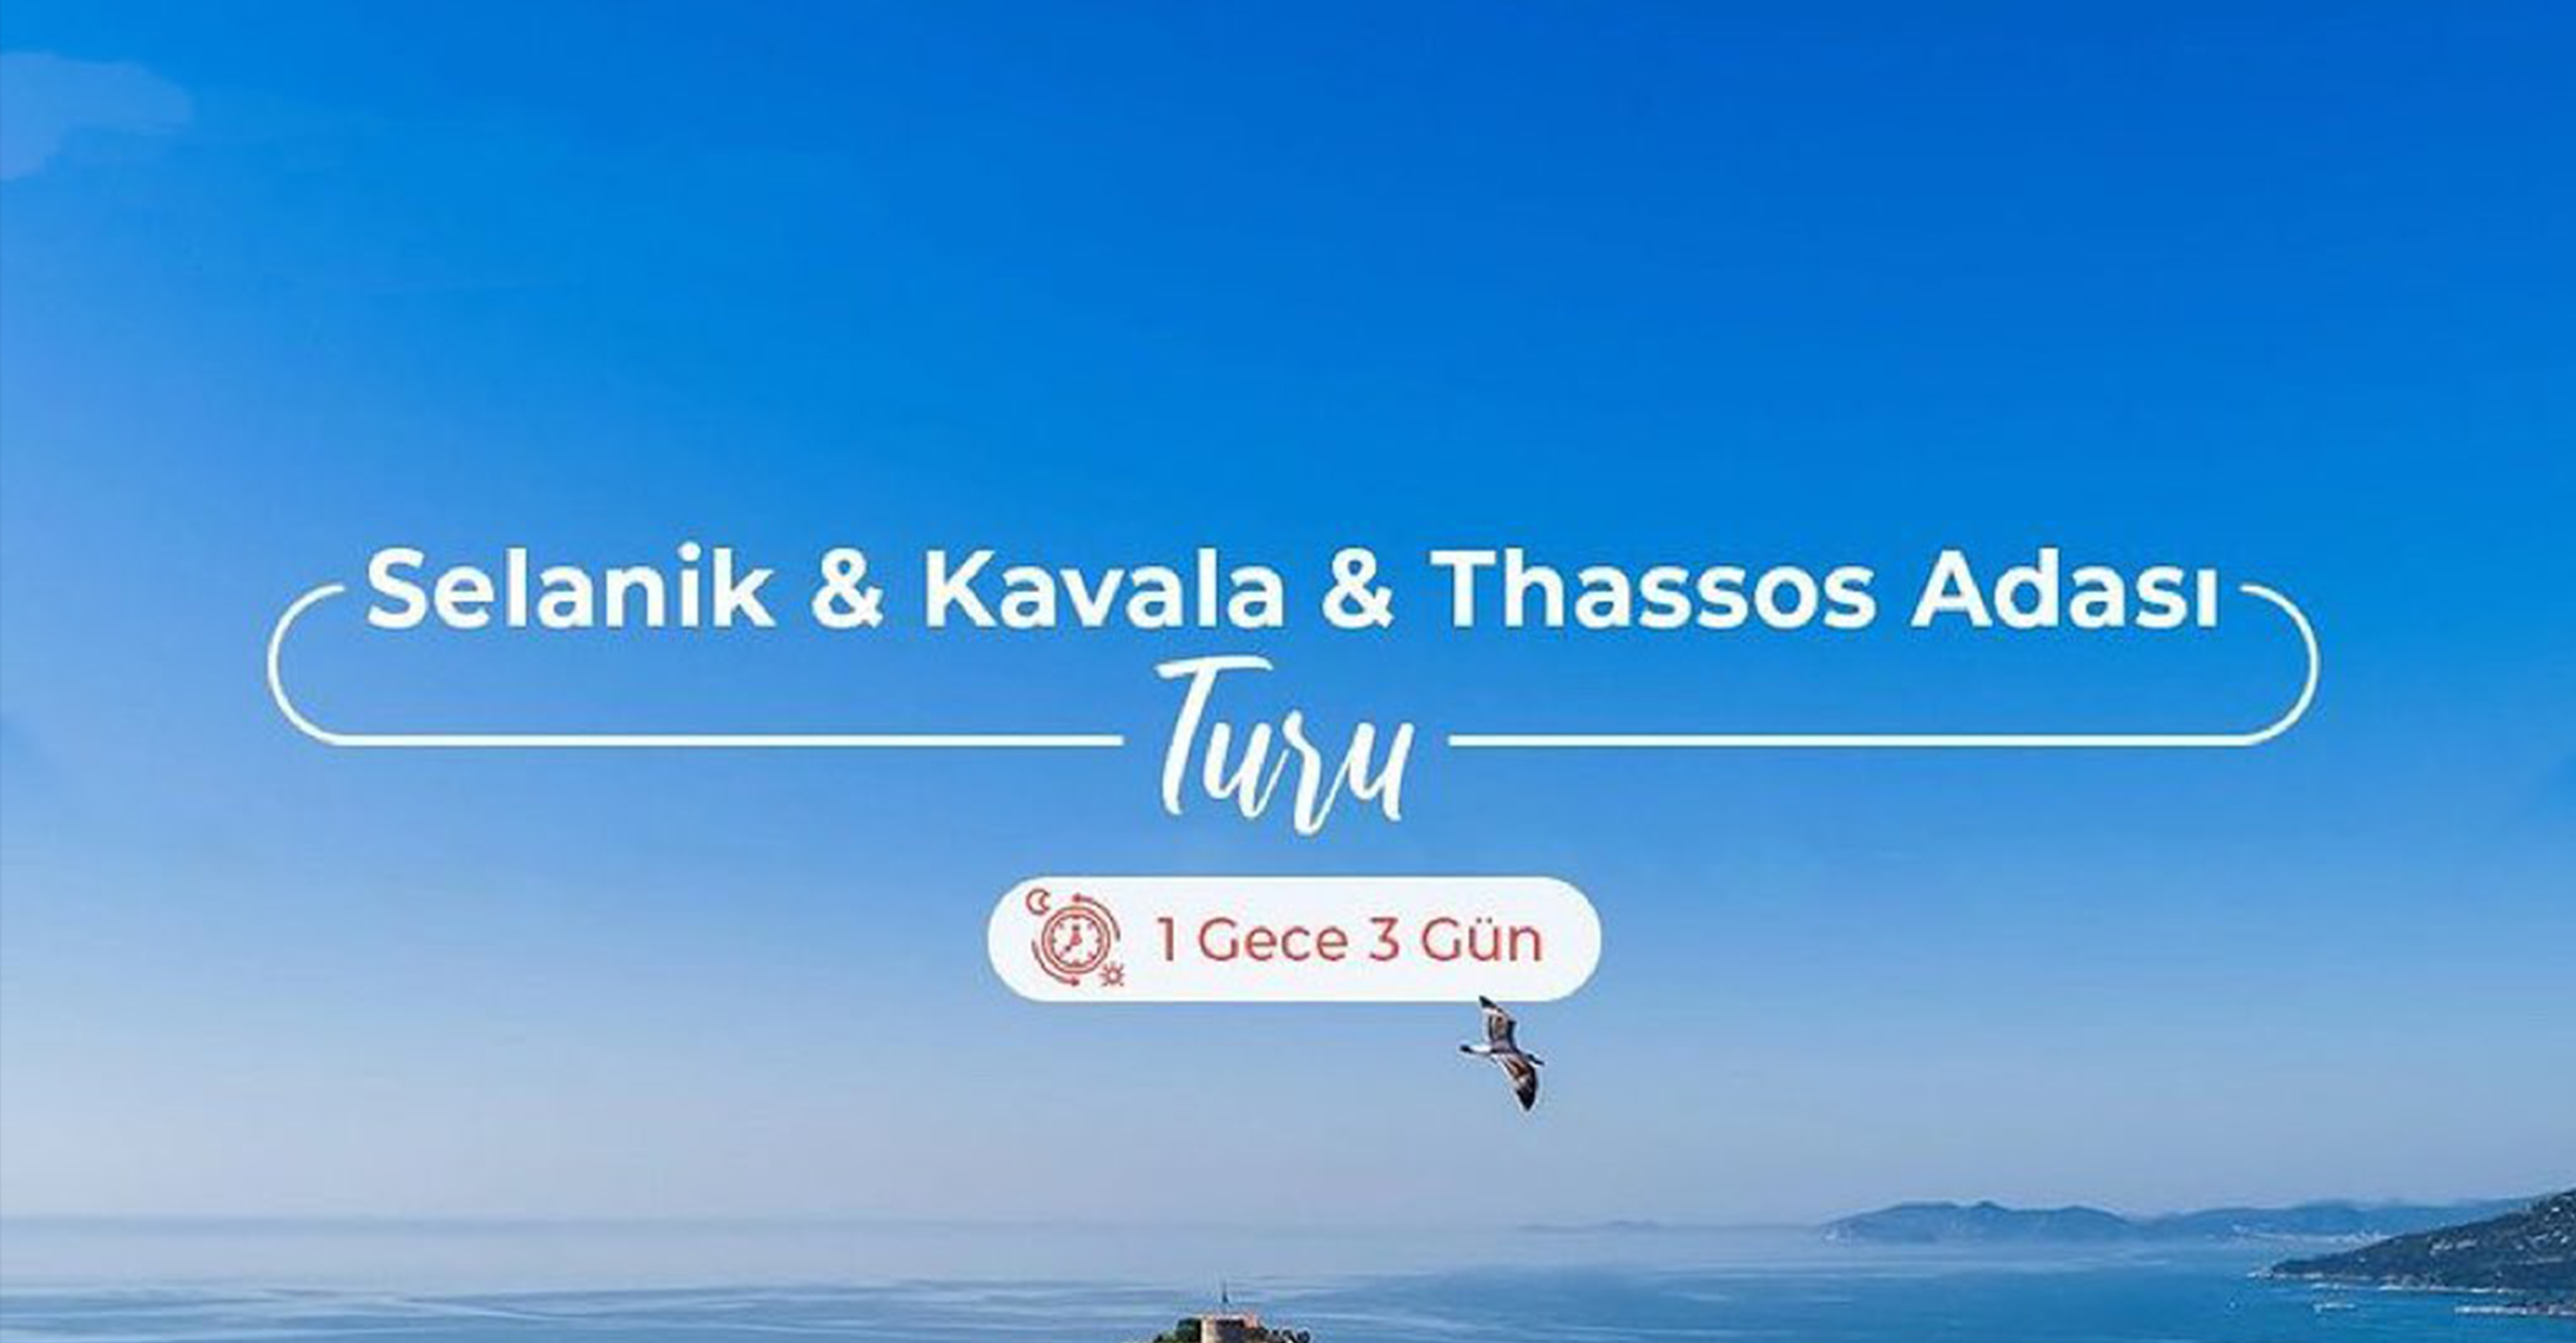 Selanik & Kavala & Thassos Adası Turu en iyi fiyat avantajı ile